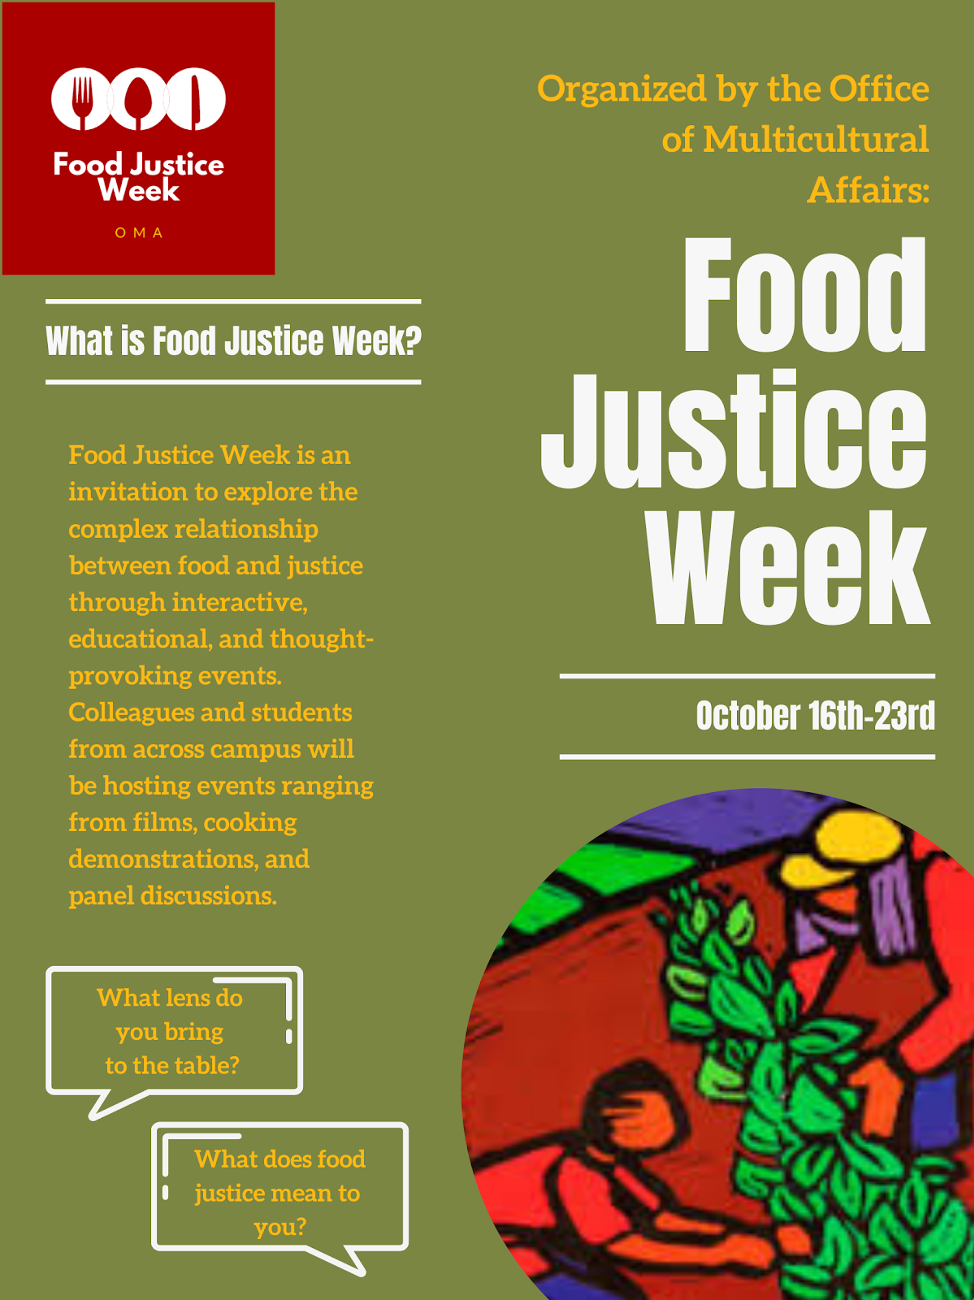 Food justice week